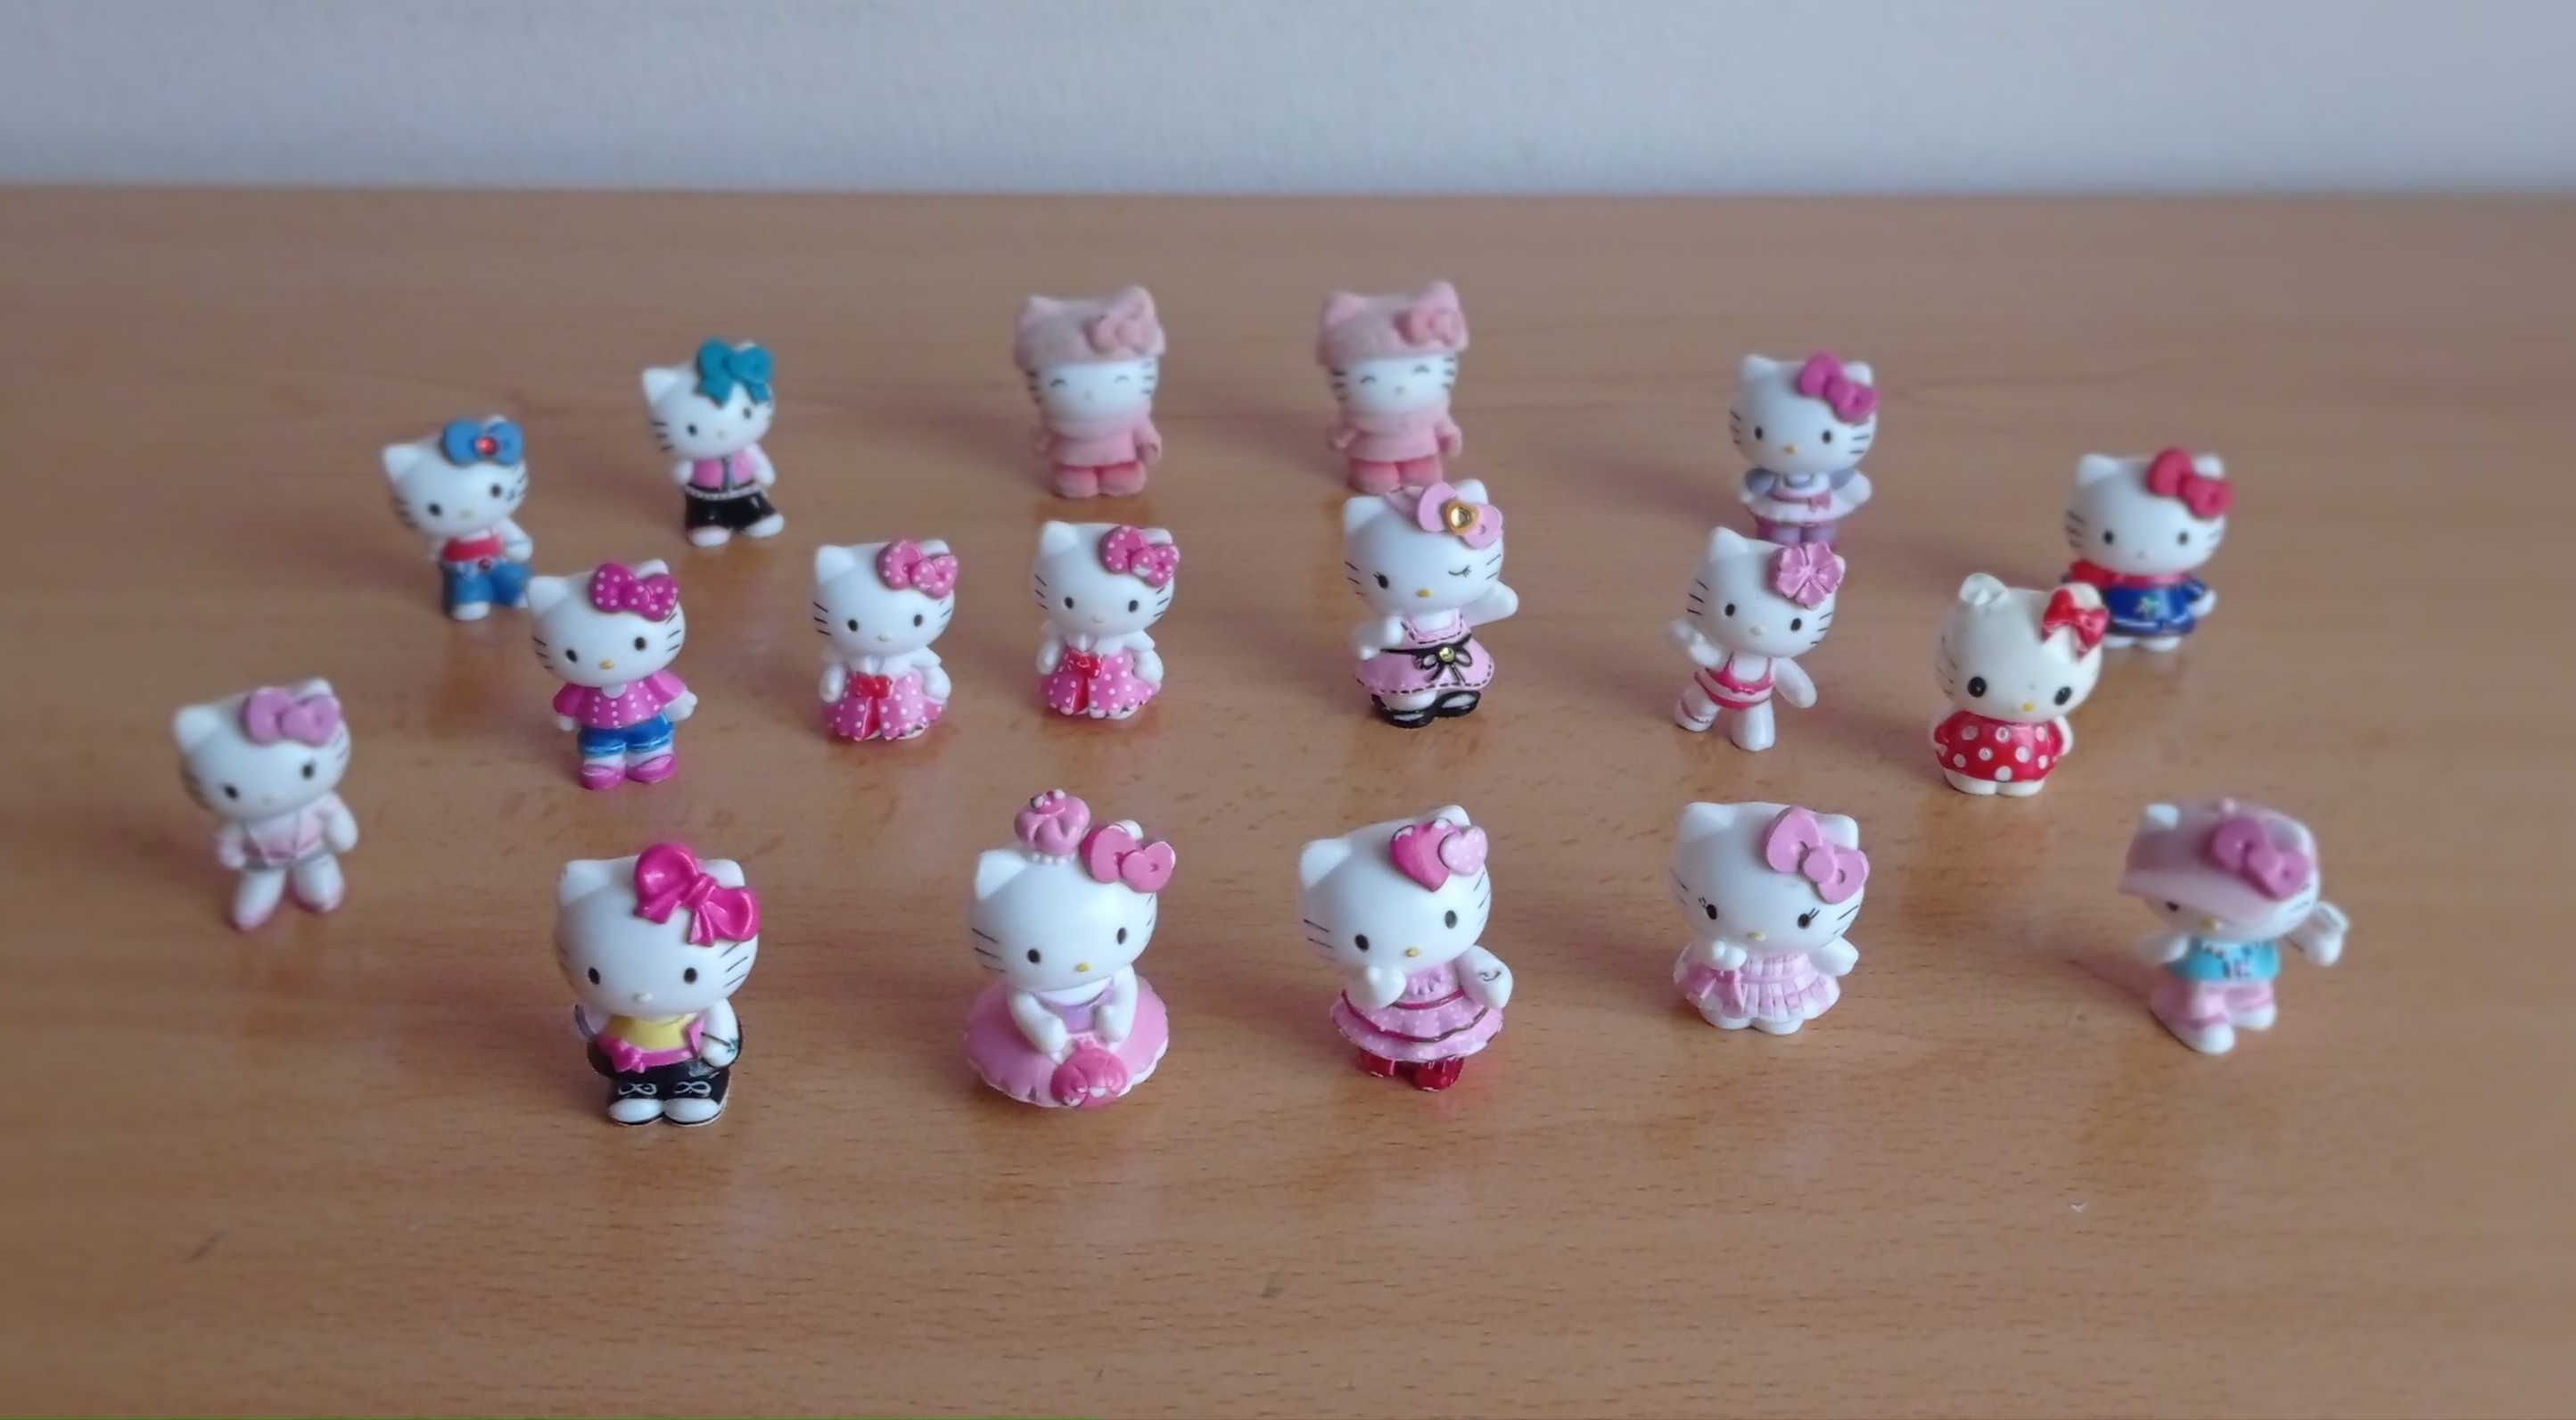 Conjuntos da Hello Kitty e bonecas